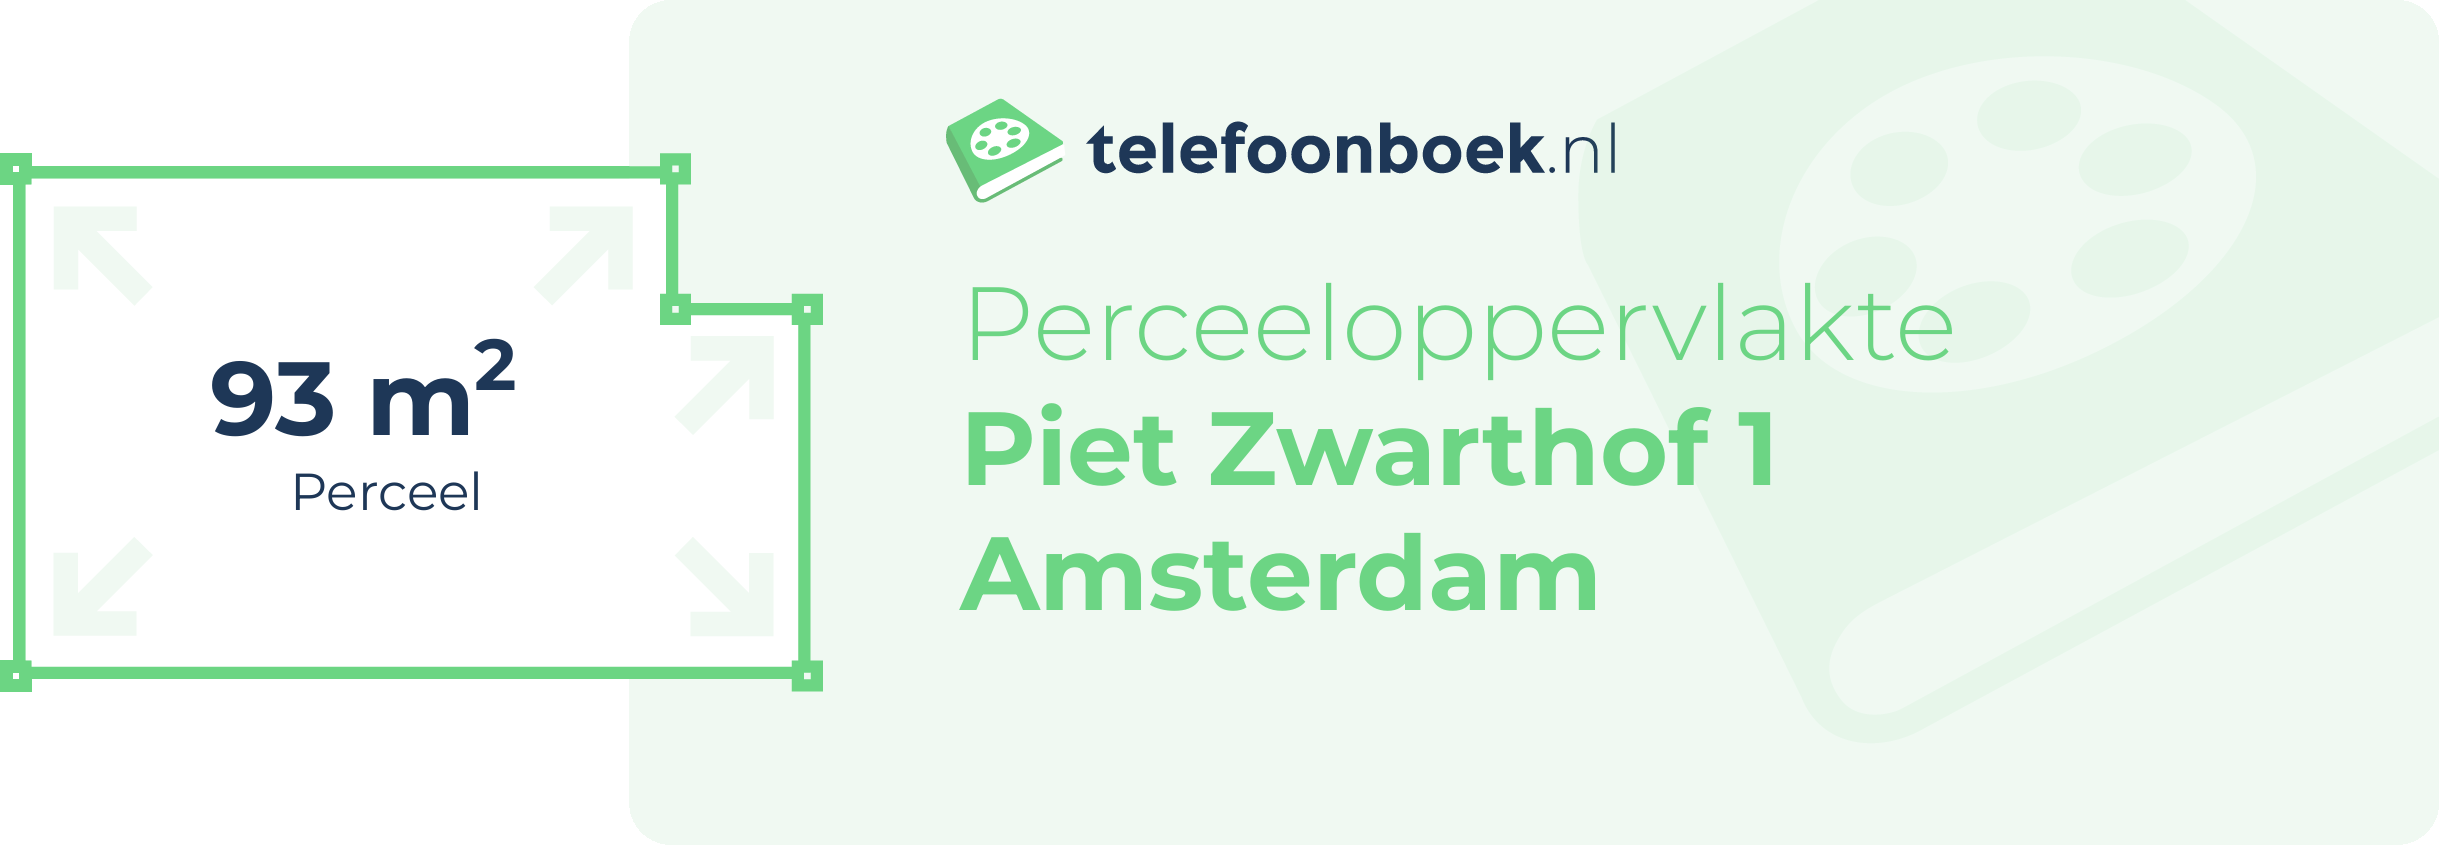 Perceeloppervlakte Piet Zwarthof 1 Amsterdam